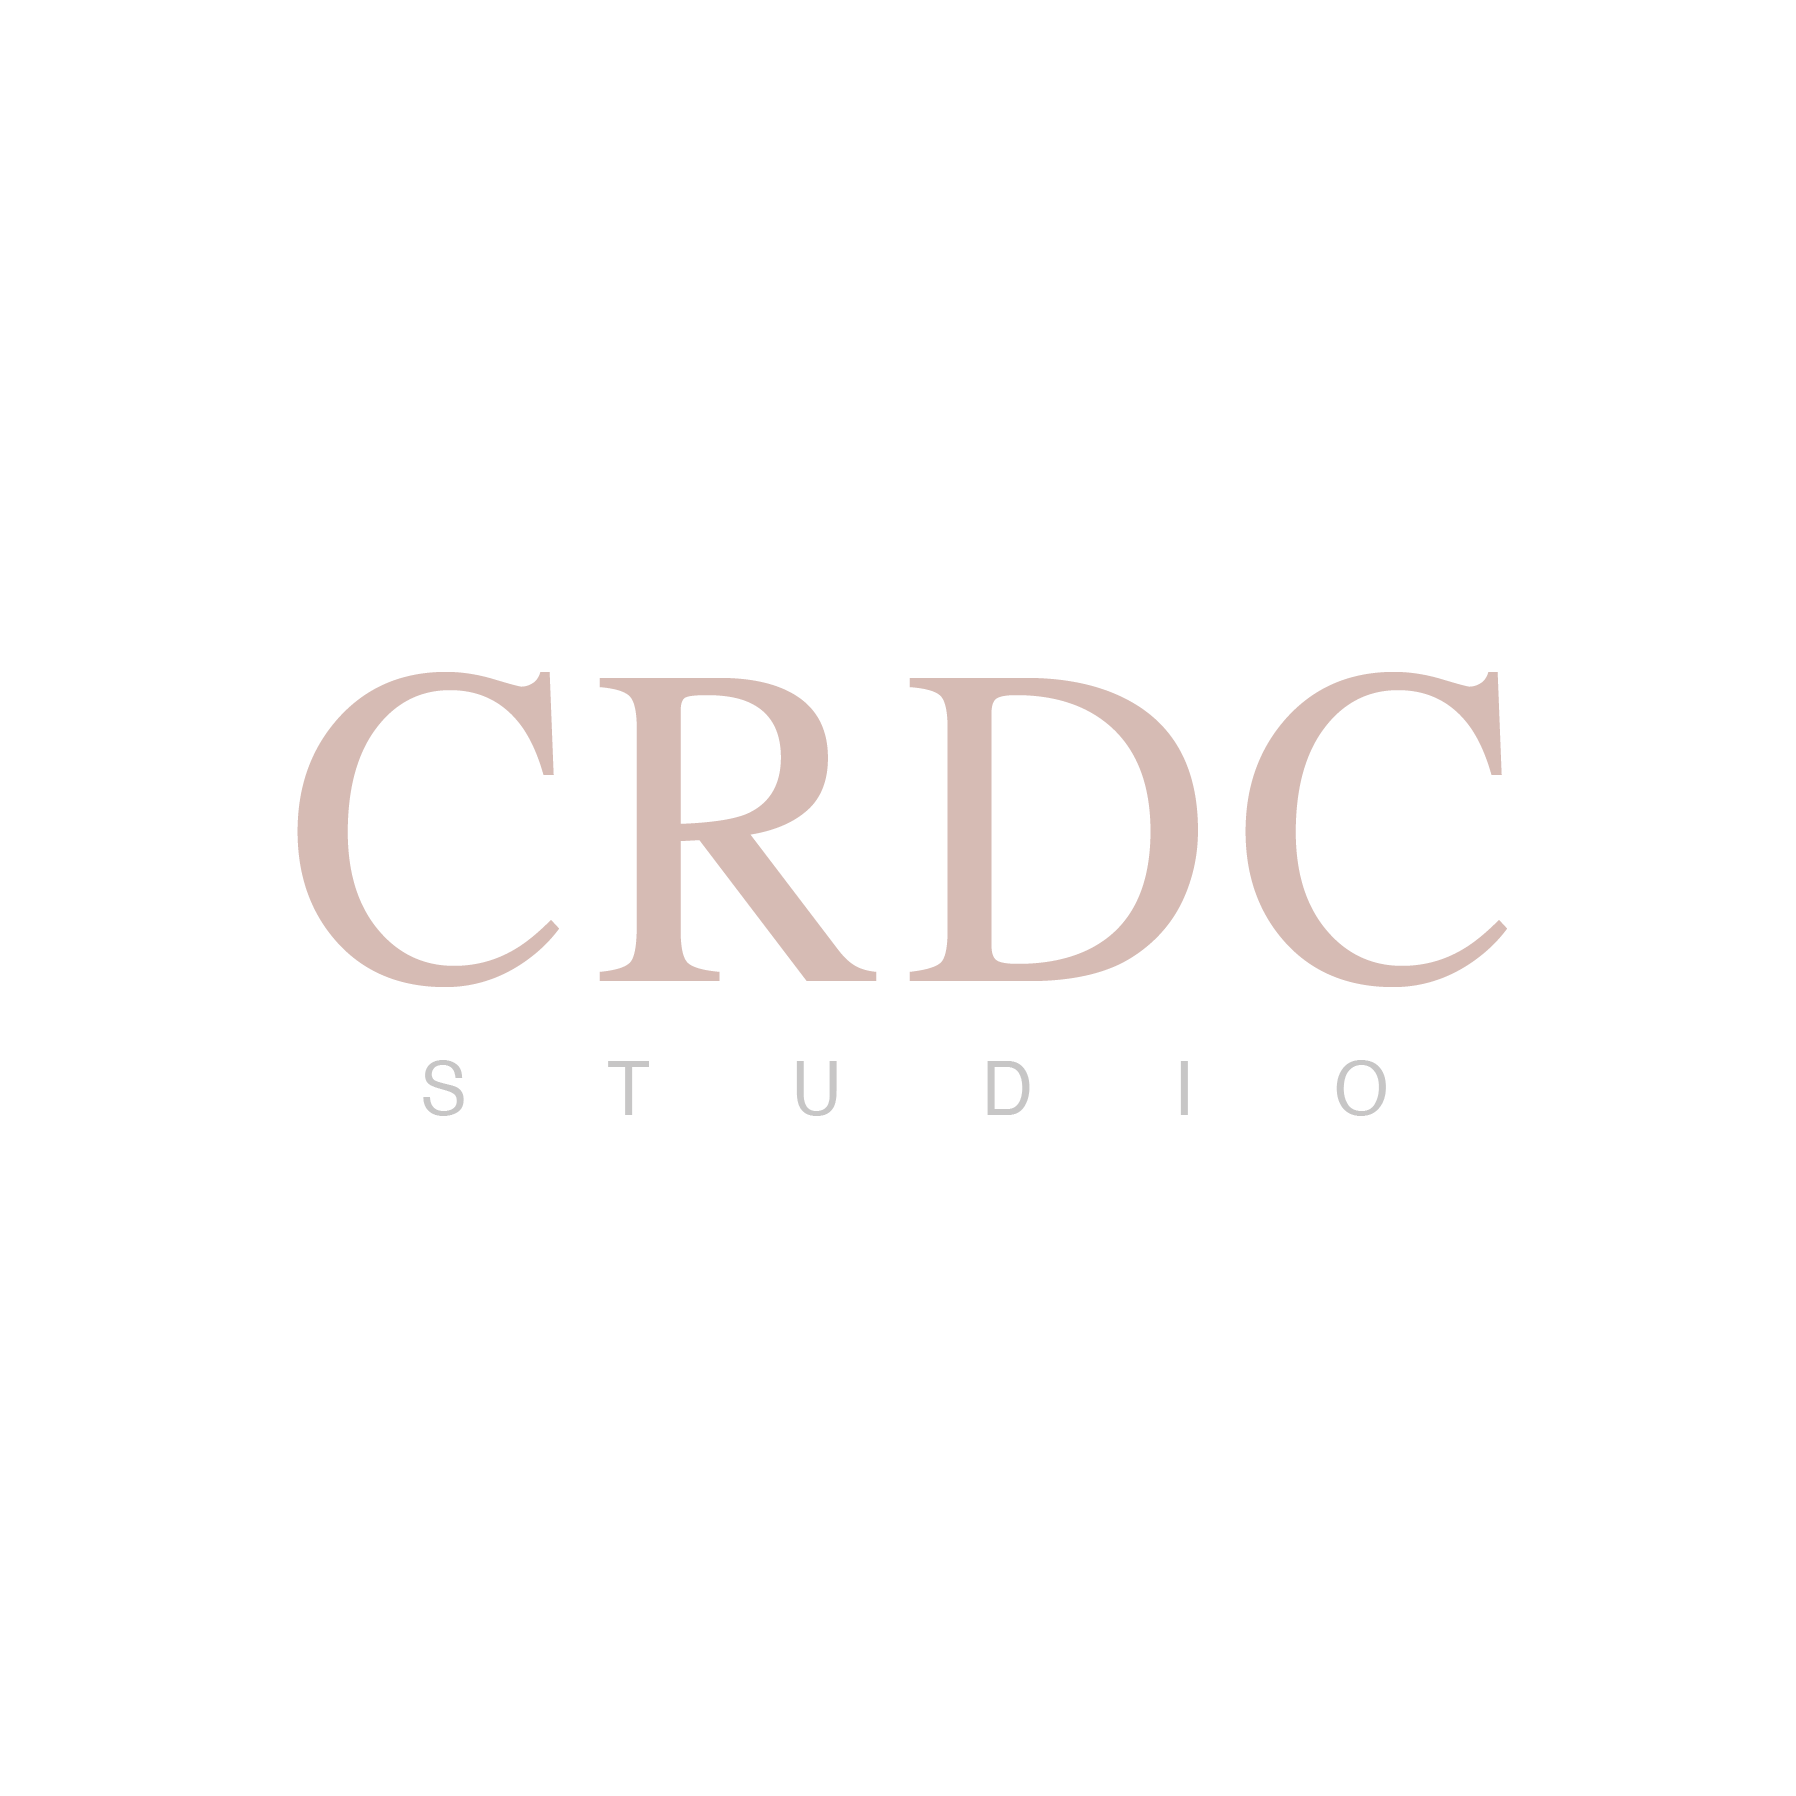 CRDC Studio